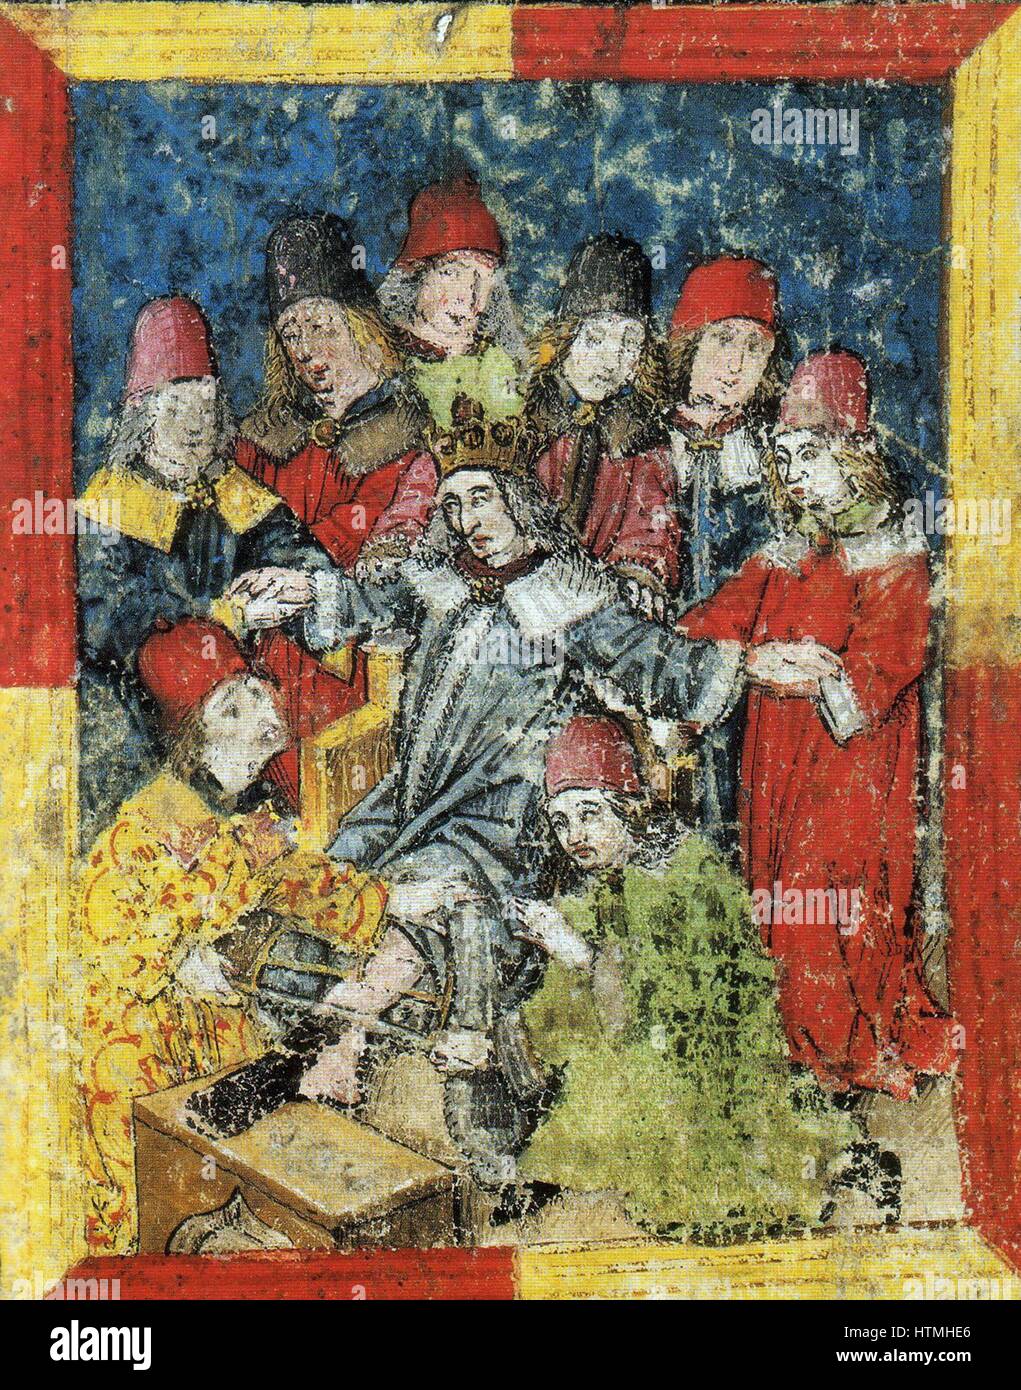 Friedrich III. von Habsburg (21 September 1415 – 19 August 1493) wurde als deutscher König als Nachfolger von Albert II. im Jahre 1440 gewählt. Im Alter von 77 Jahren starb Frederick III in Linz in einem verlassenen Versuch, sein linke Bein amputiert haben. Amputierte Bein war mit ihm begraben. Stockfoto